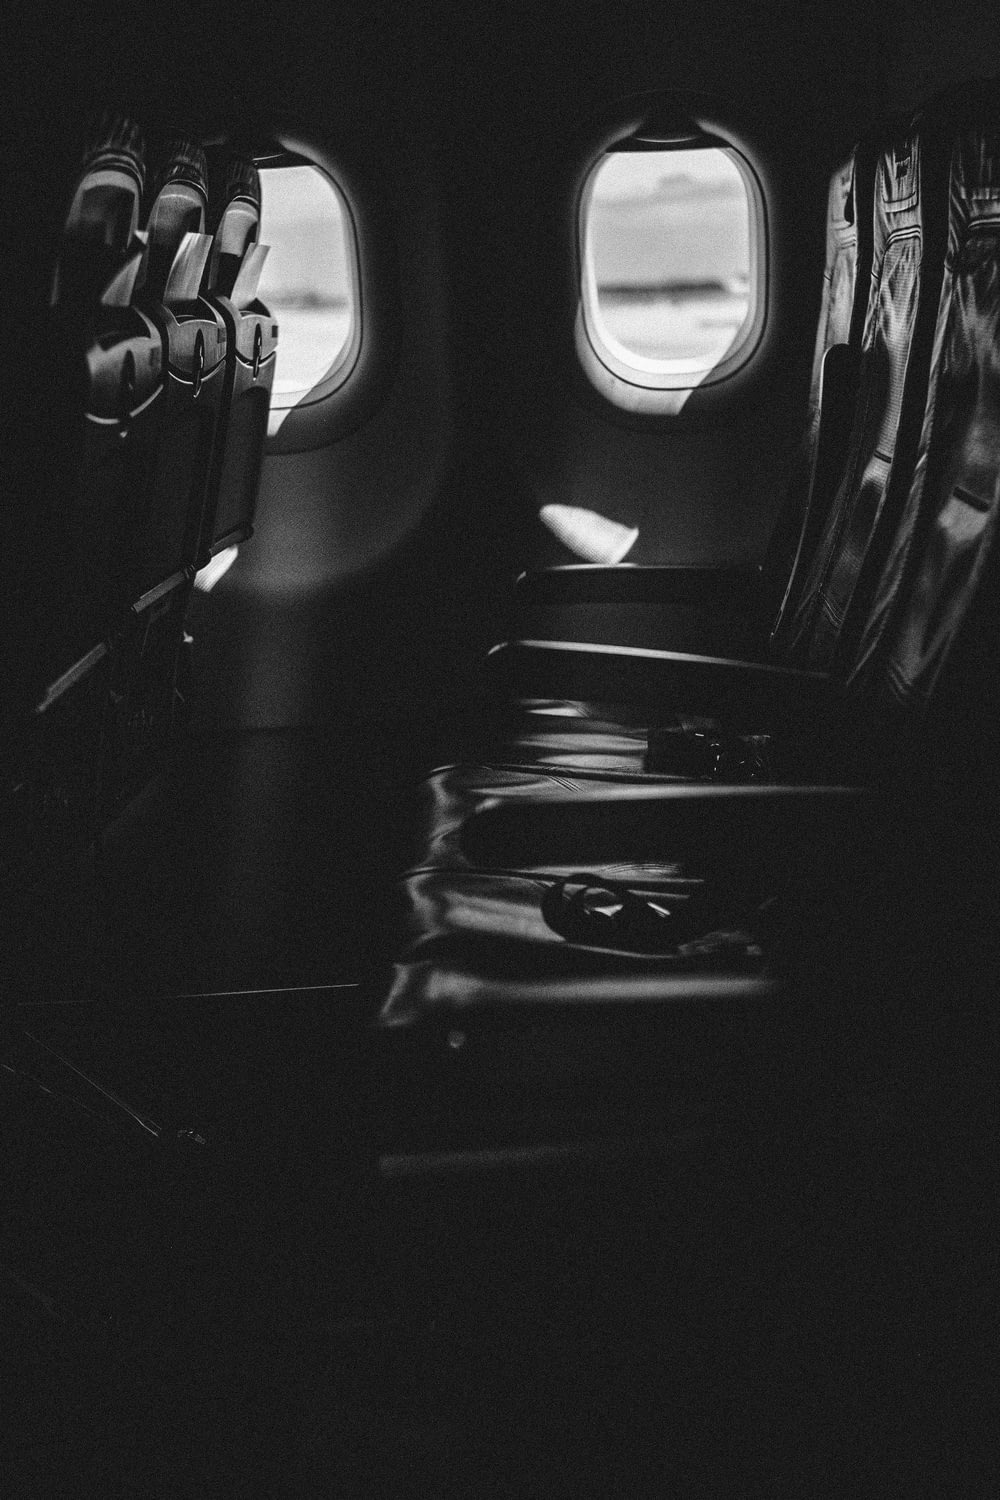 empty seats inside plane